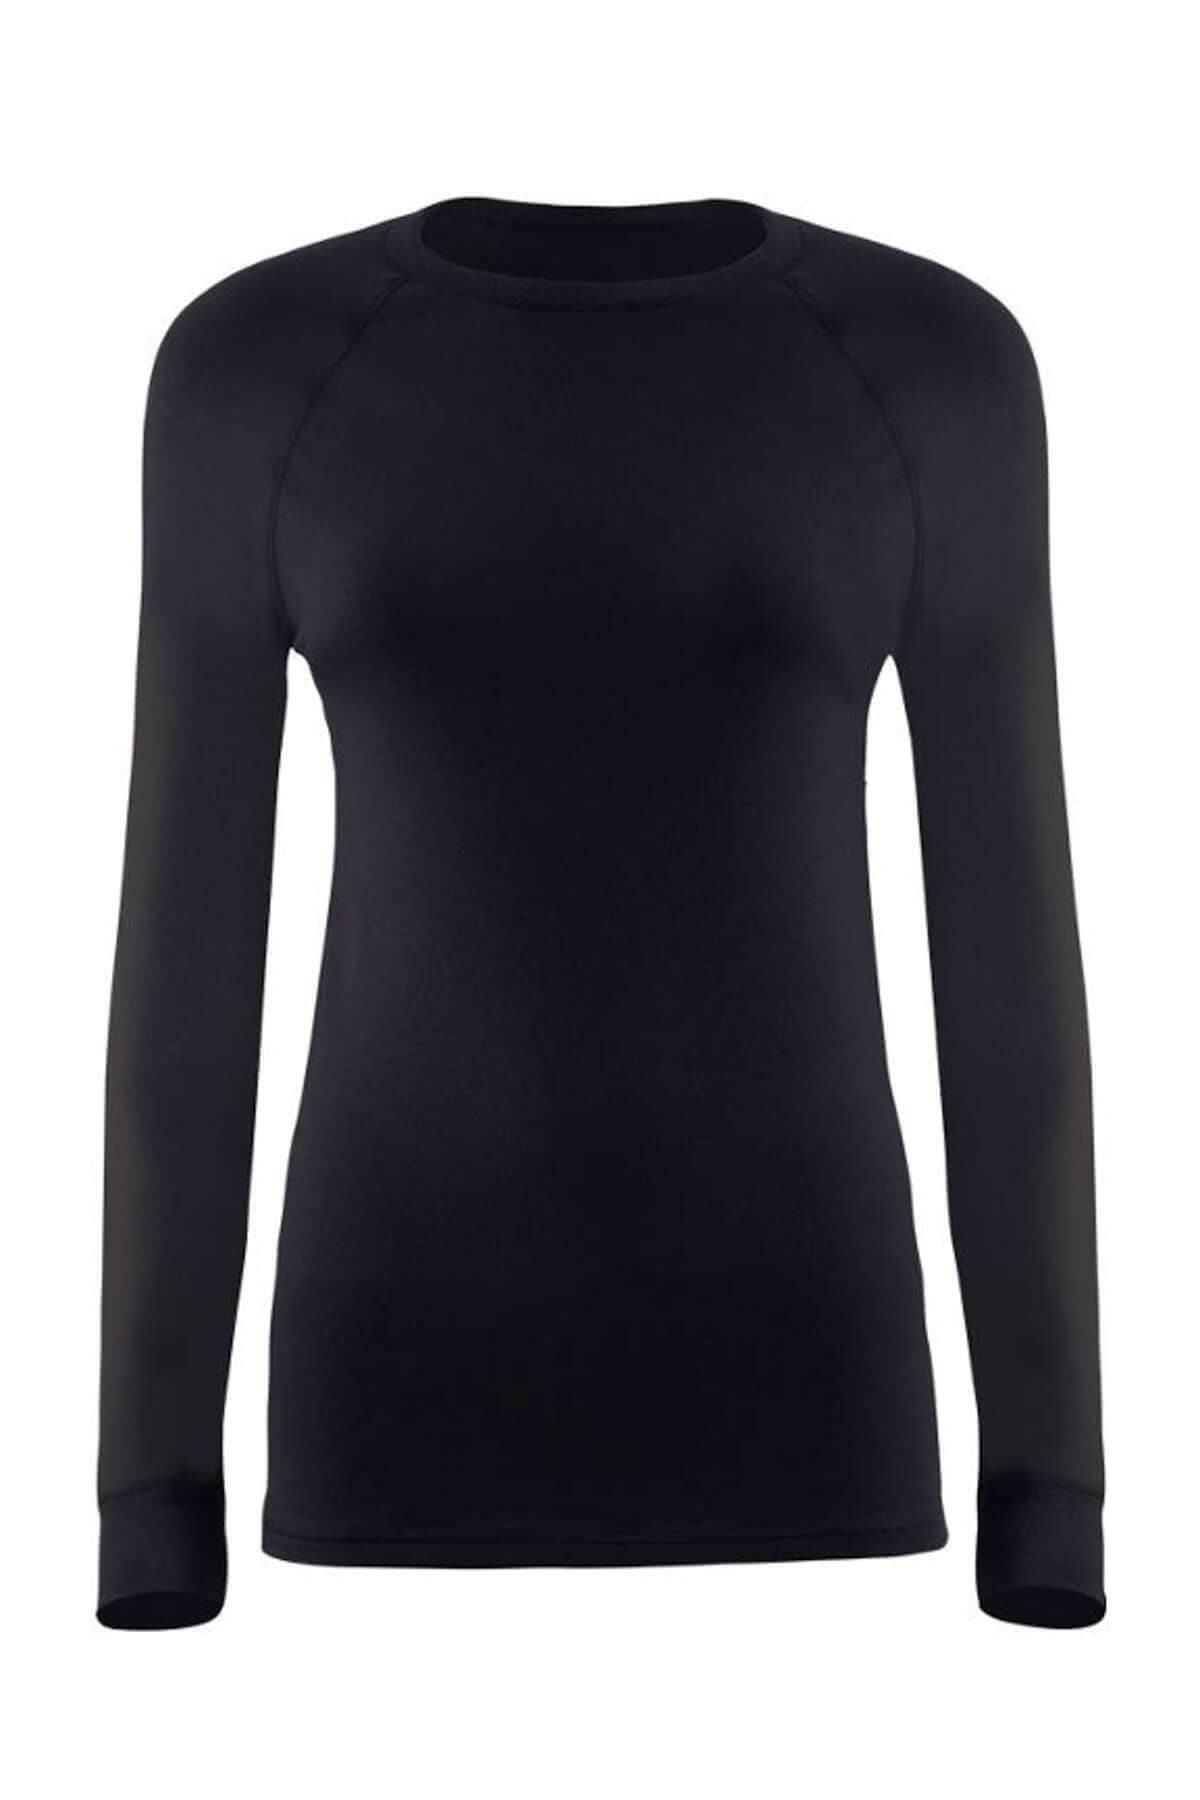 Blackspade Kadın Siyah 2. Seviye Termal T-shirt 9259